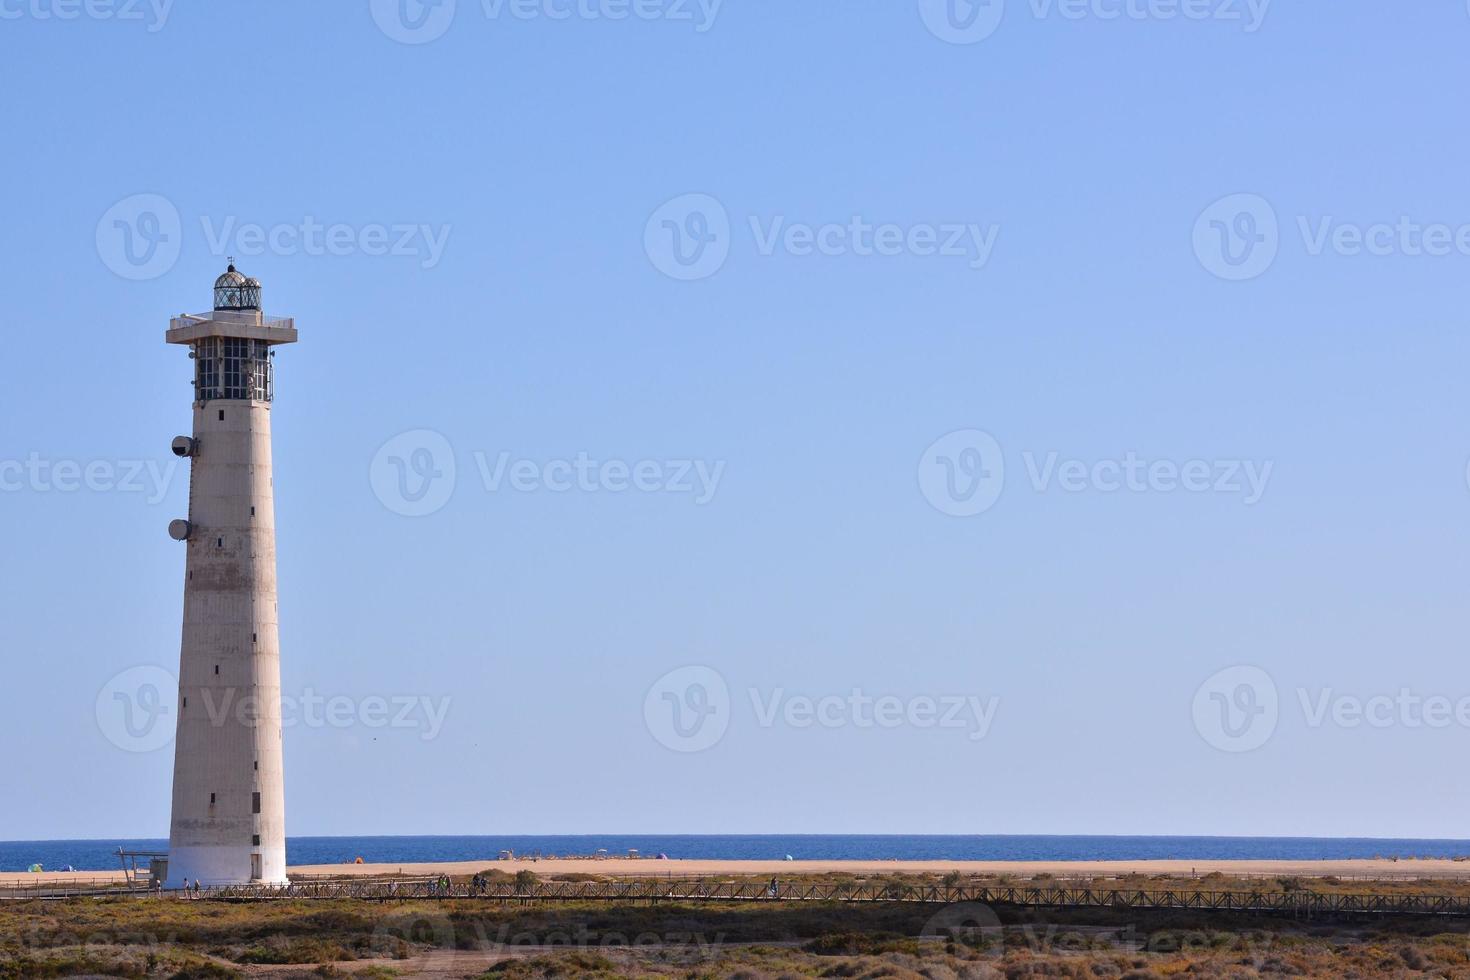 Leuchtturm am Meer foto